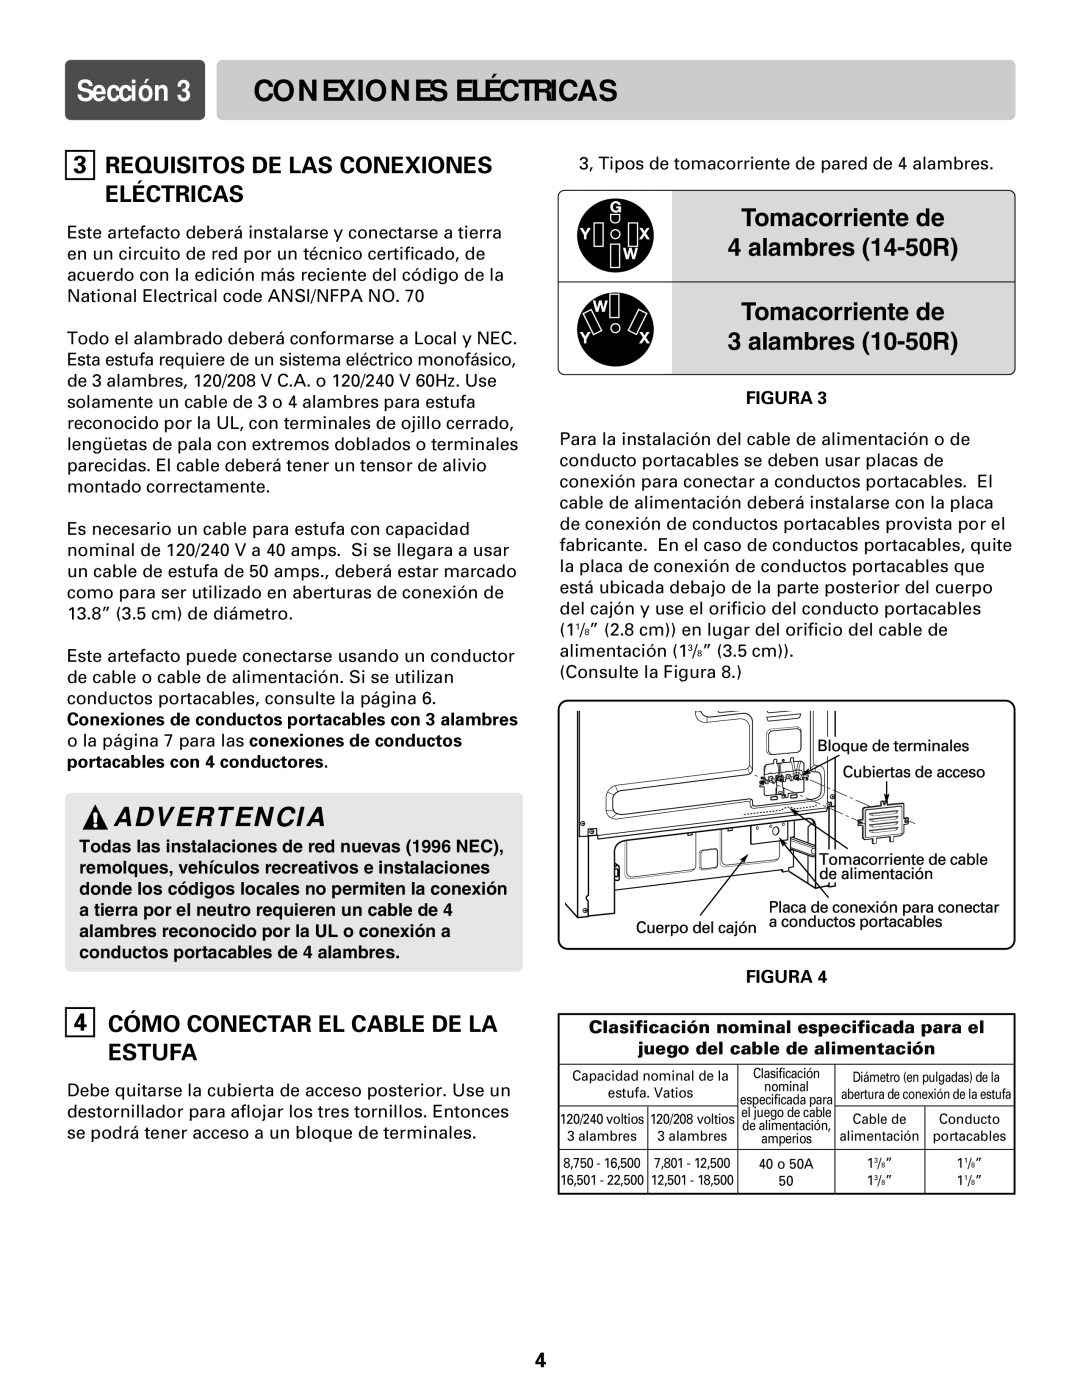 LG Electronics LRE30755S Sección 3 CONEXIONES ELÉCTRICAS, Requisitos De Las Conexiones Eléctricas, Advertencia, Figura 